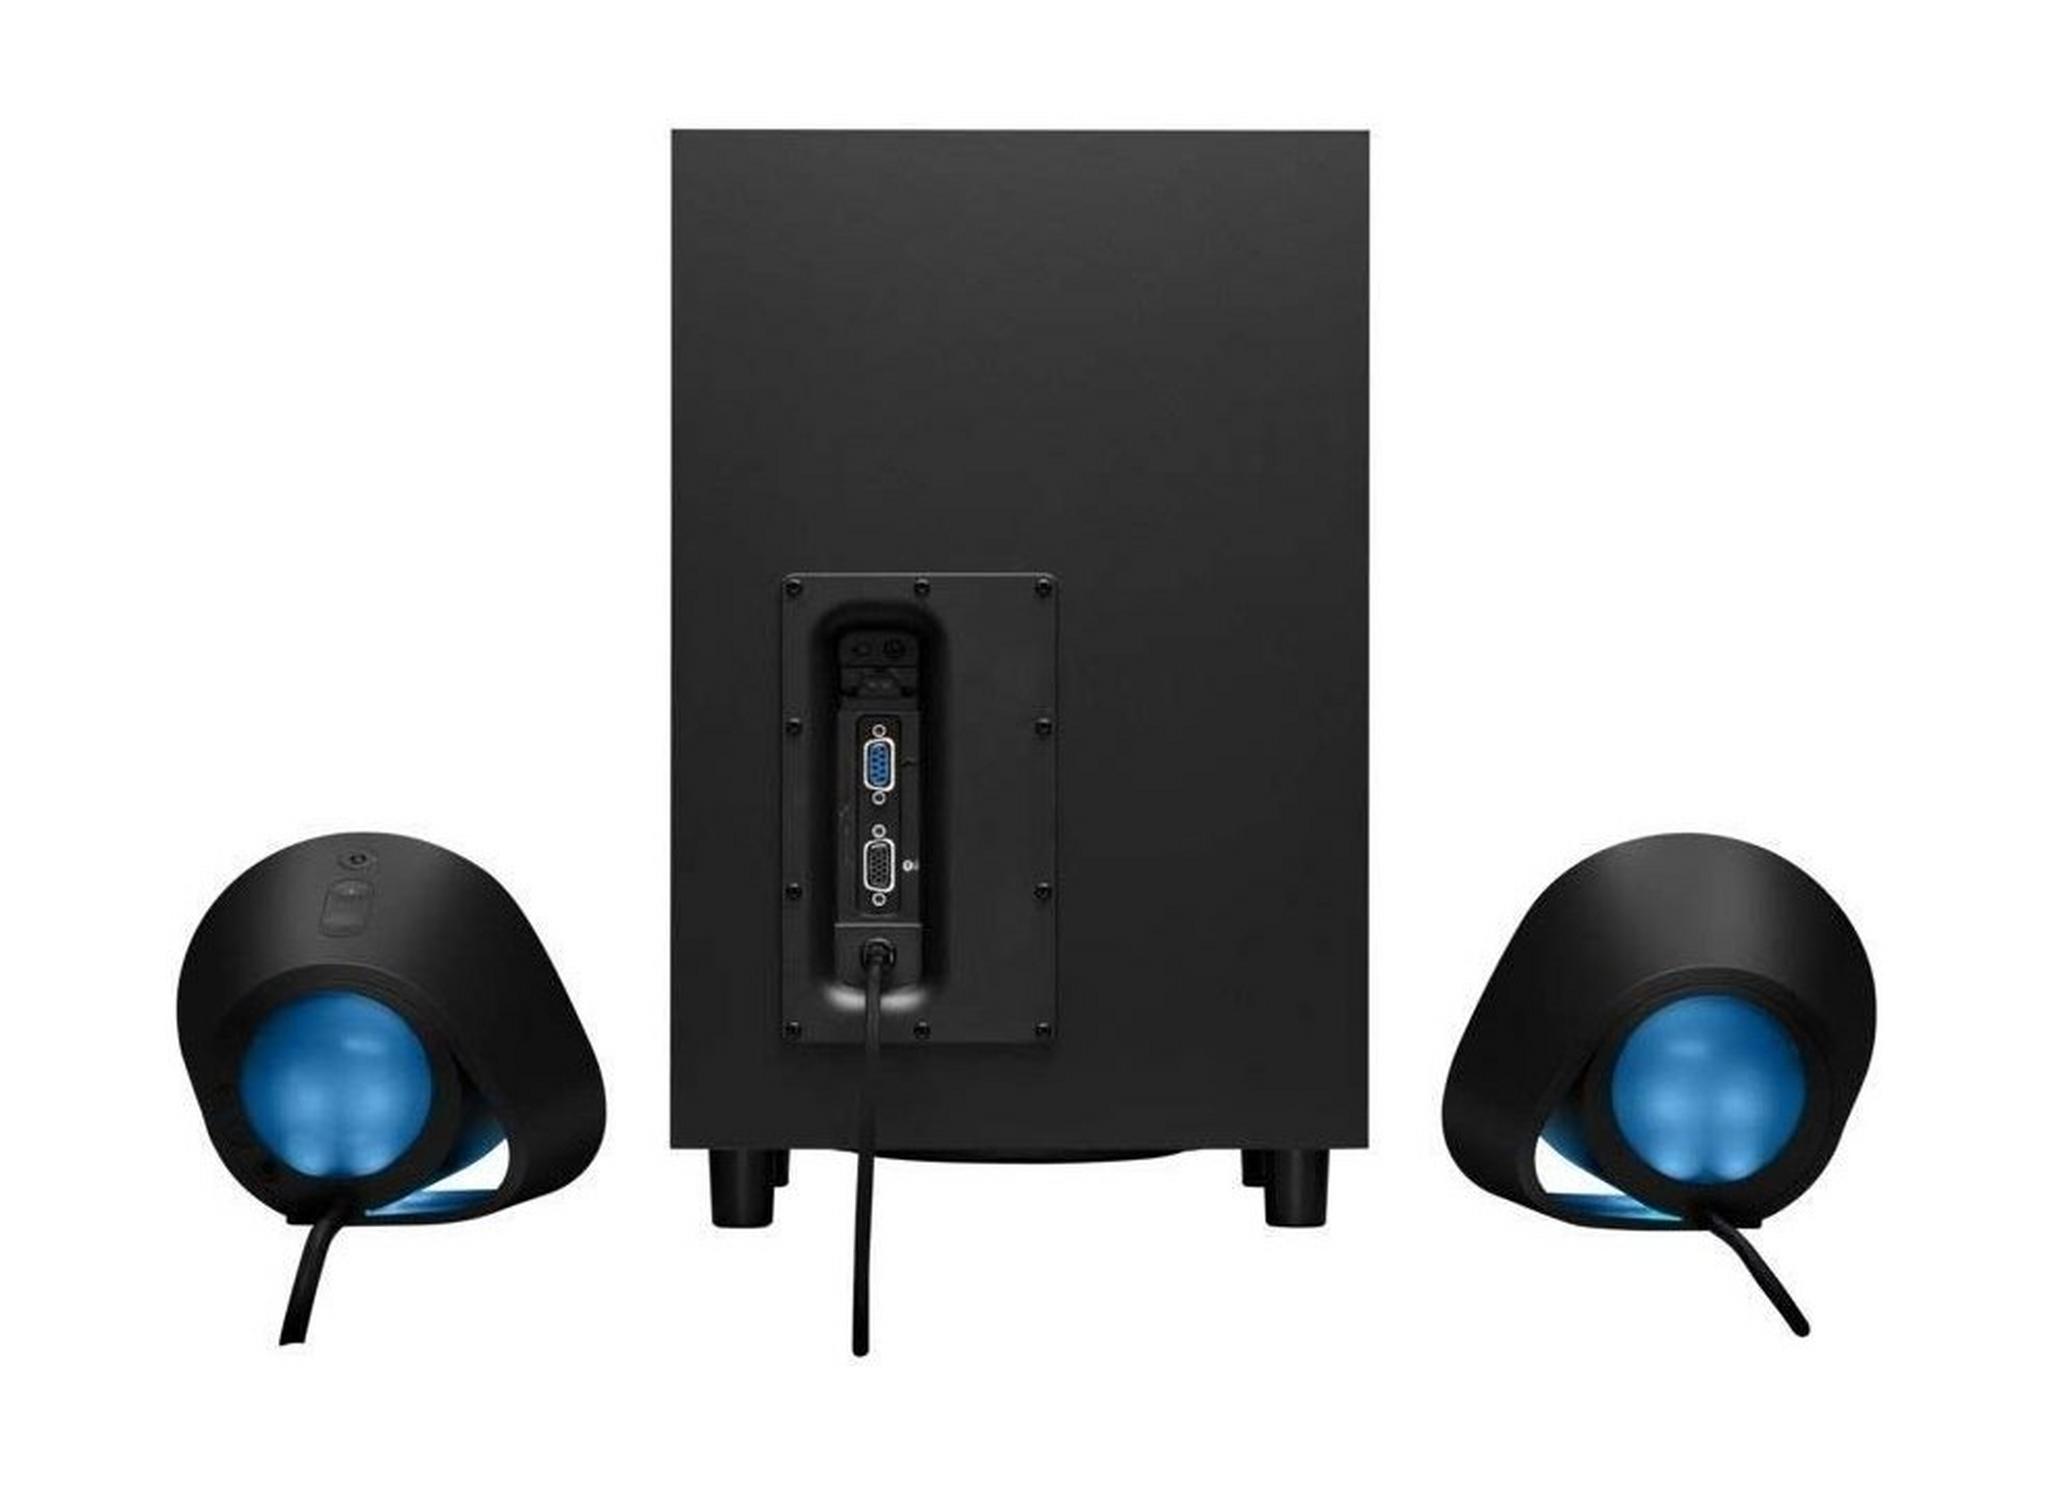 مكبرات الصوت لكمبيوترات سطح المكتب لوجيتيك G560 - أسود